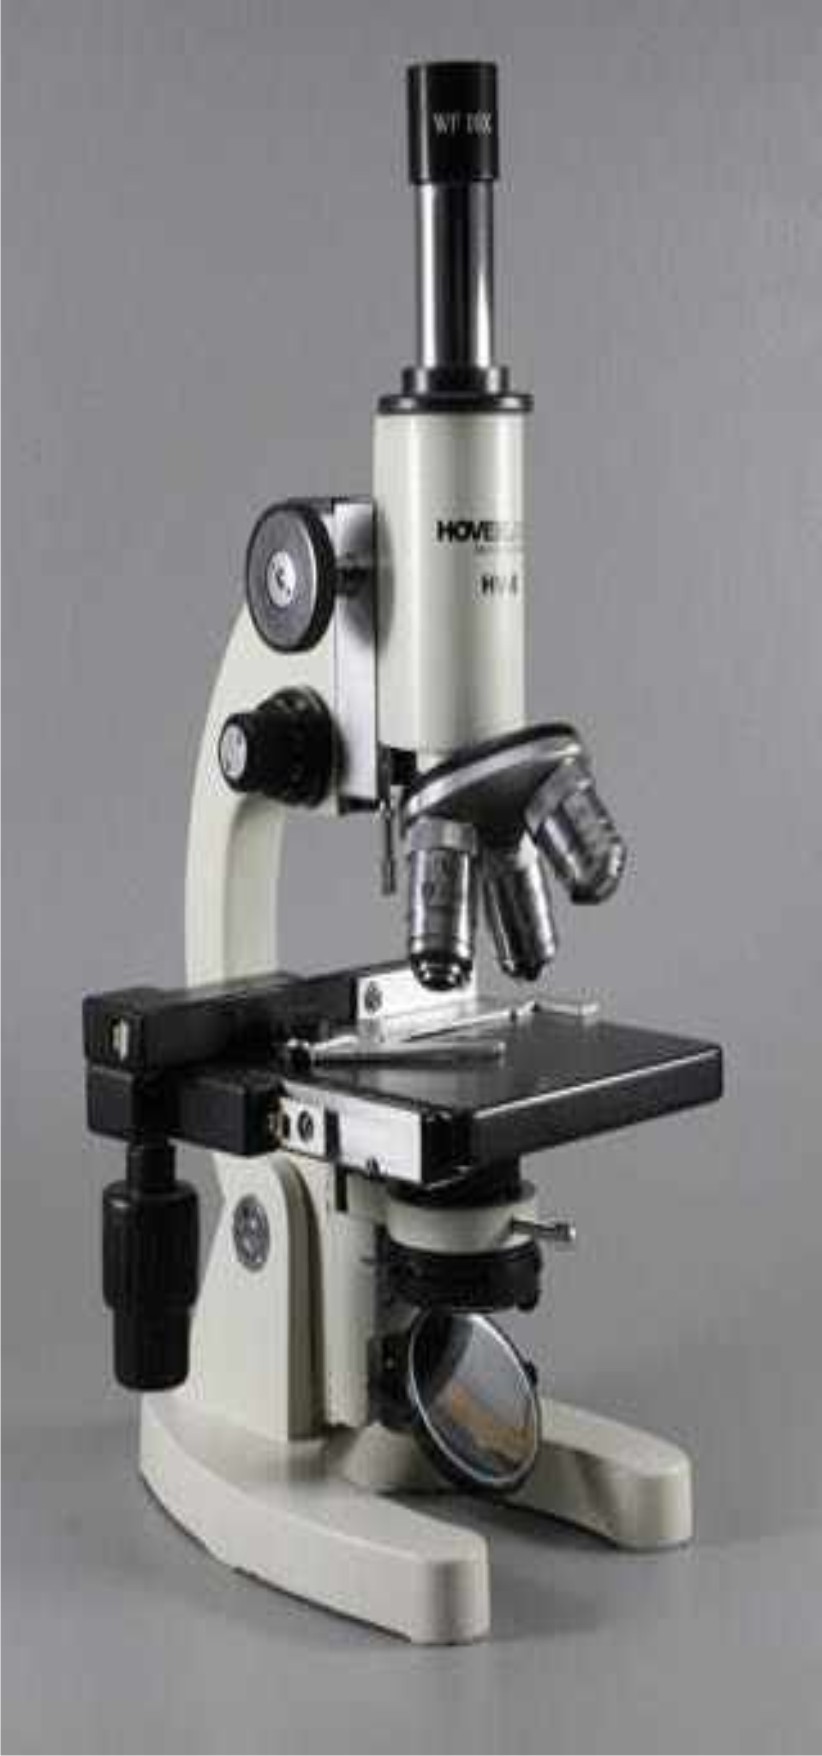  Medical Microscope, Model No.: KI - 2146